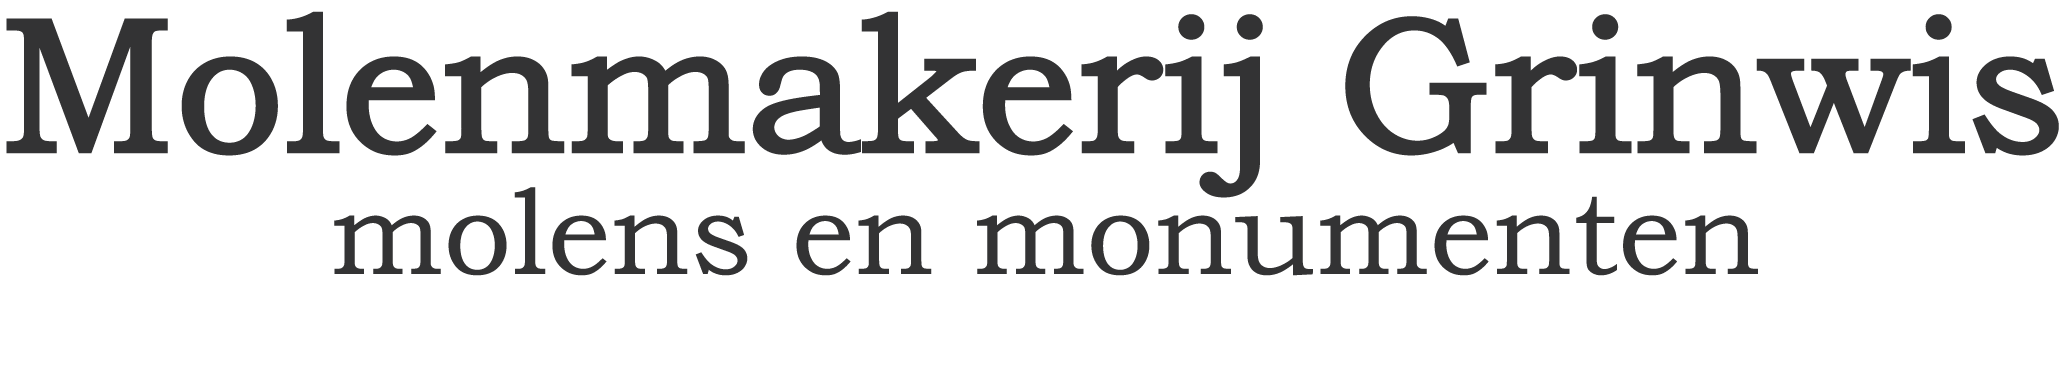 logo molenmakerij herrewijnen